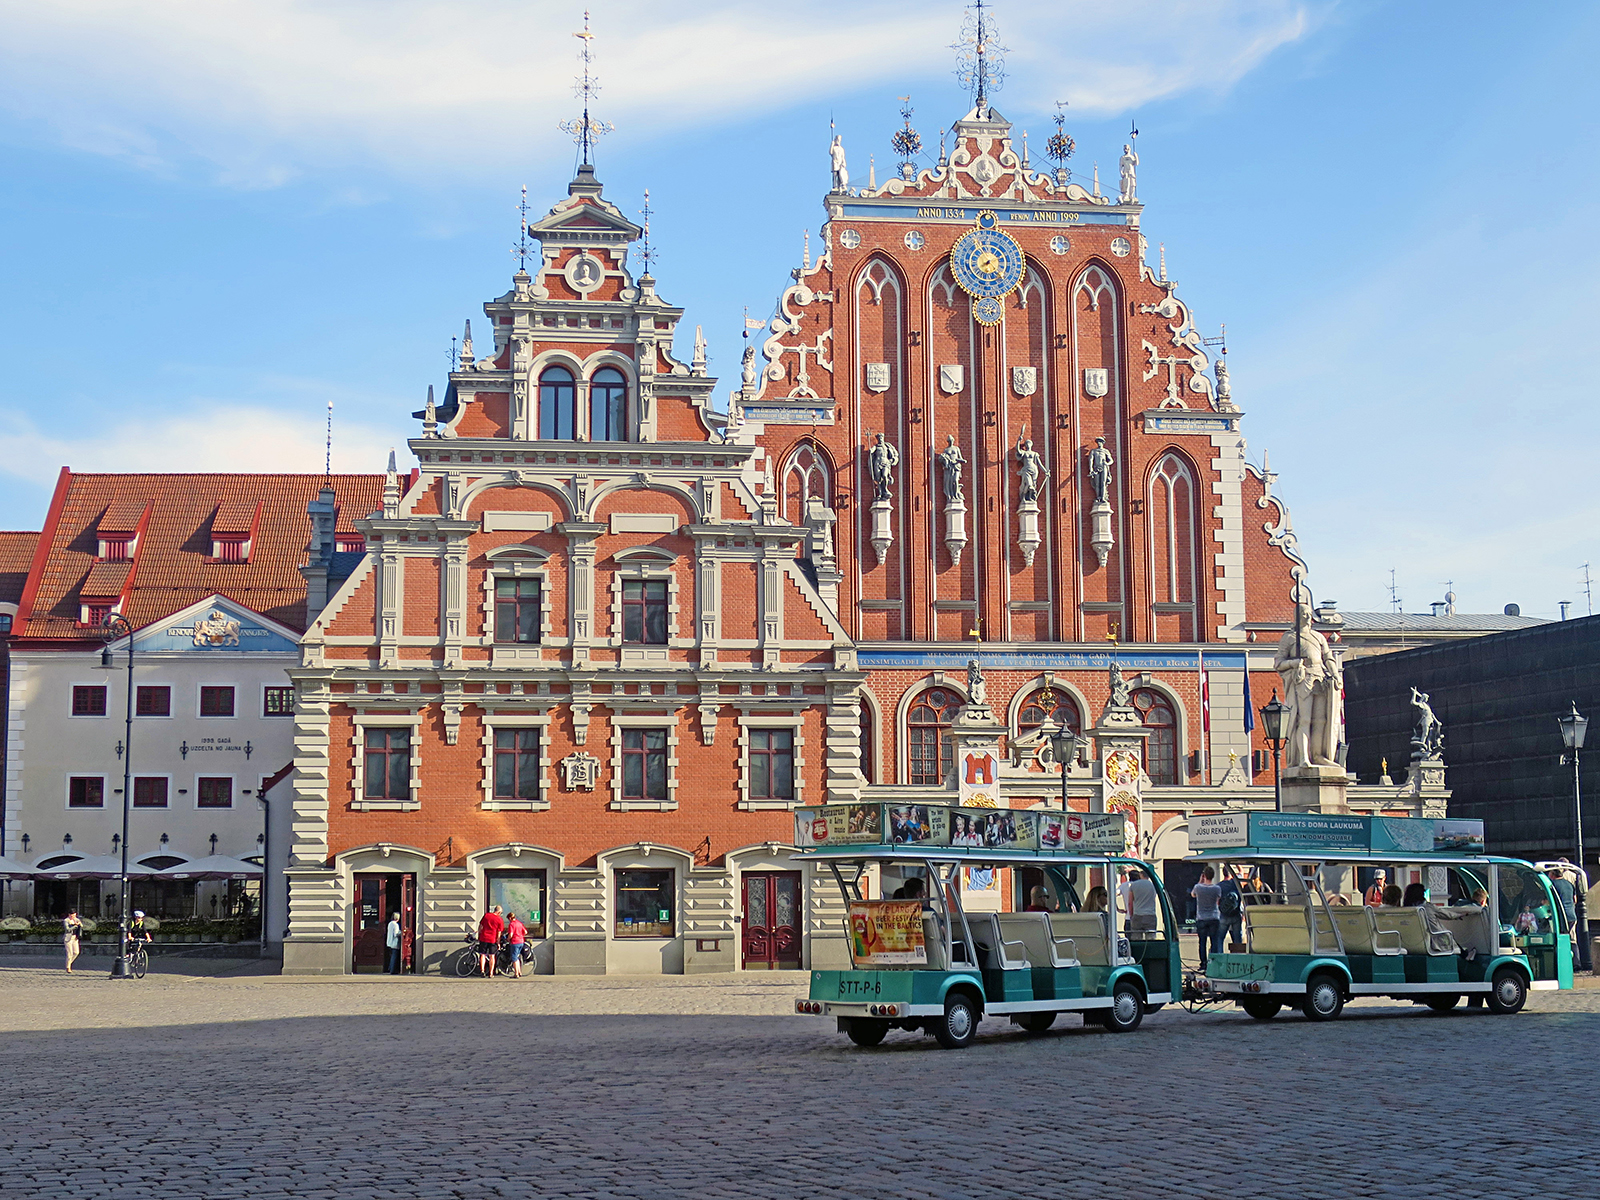 Riga statt Berlin: 11 Highlights für den perfekten Citytrip nach Riga